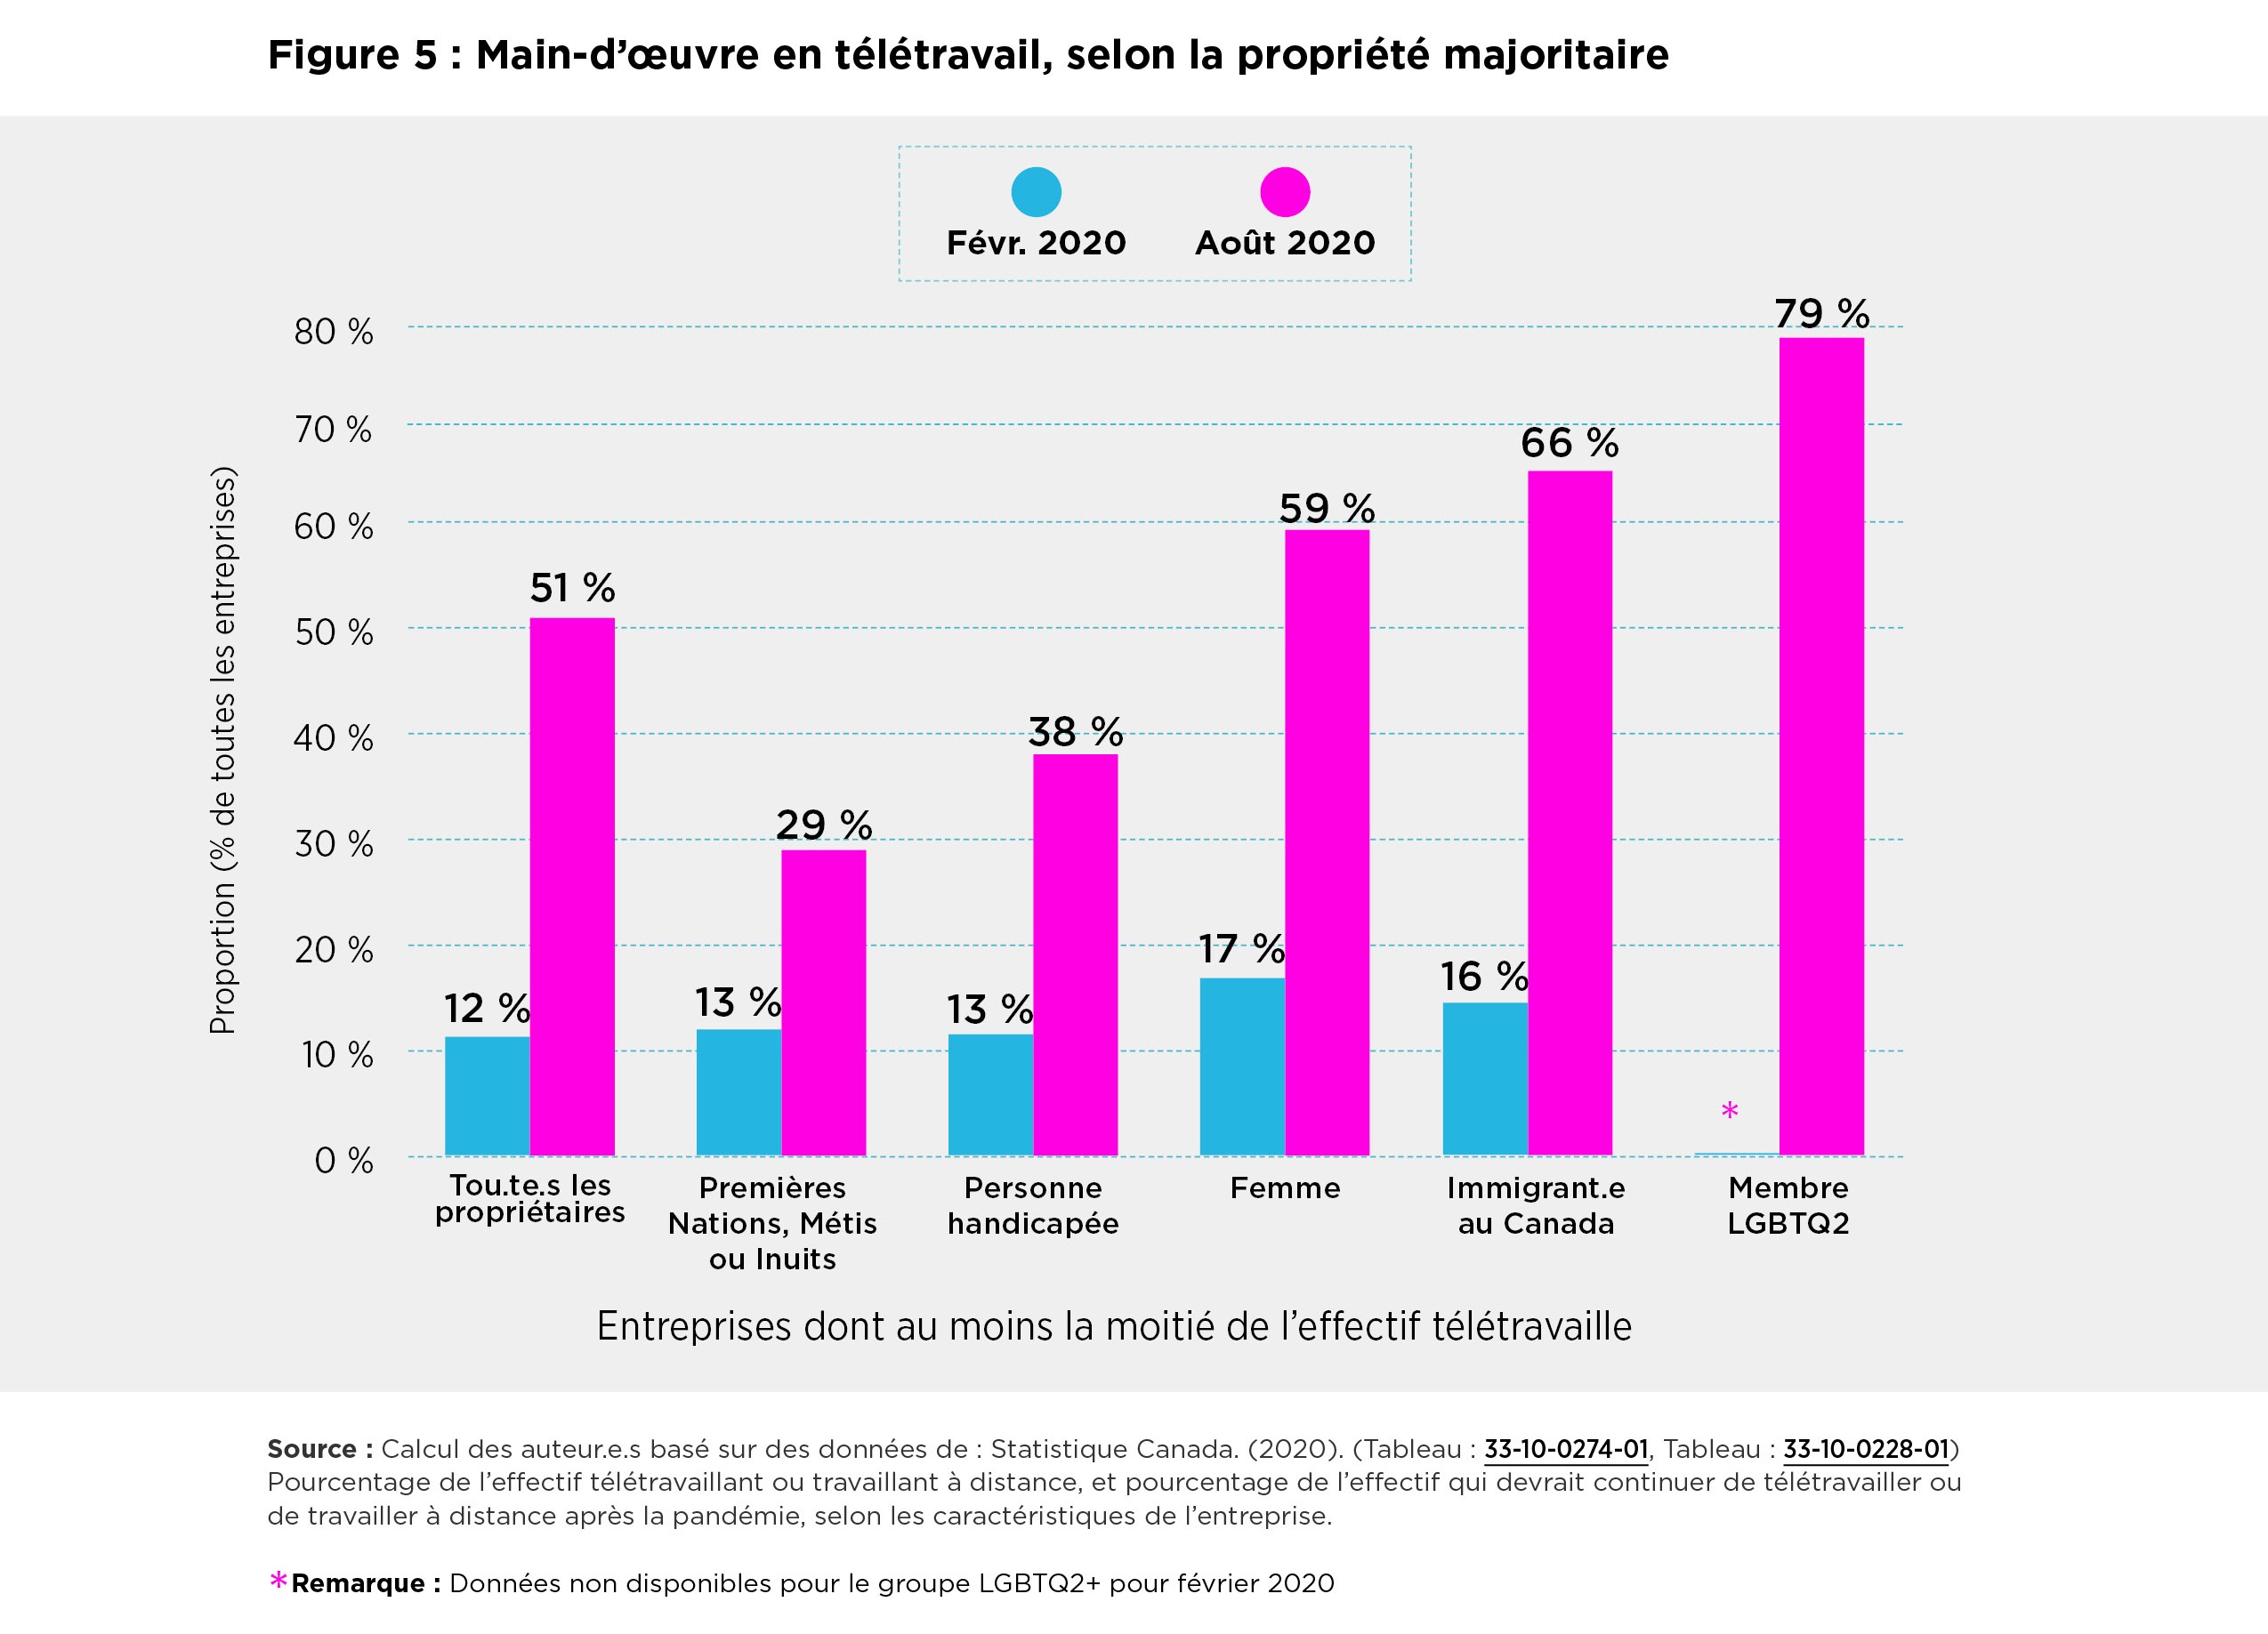 Figure 5: Workforce Teleworking by Majority Ownership